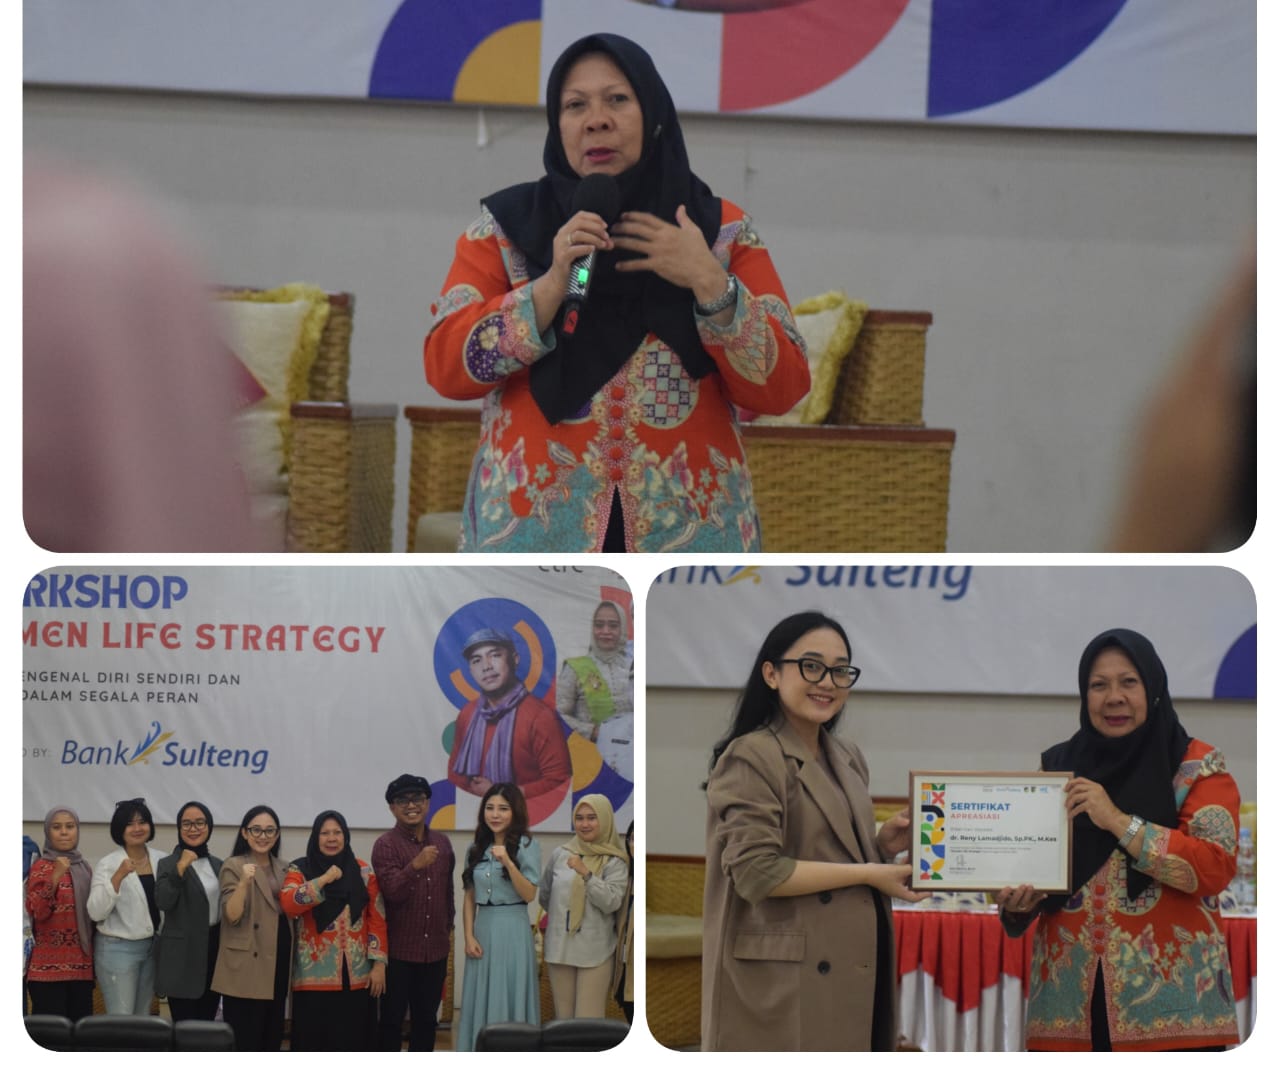 Jadi Narasumber Workshop Women Life Strategy, Wawali Reny: Perempuan Punya Potensi Besar